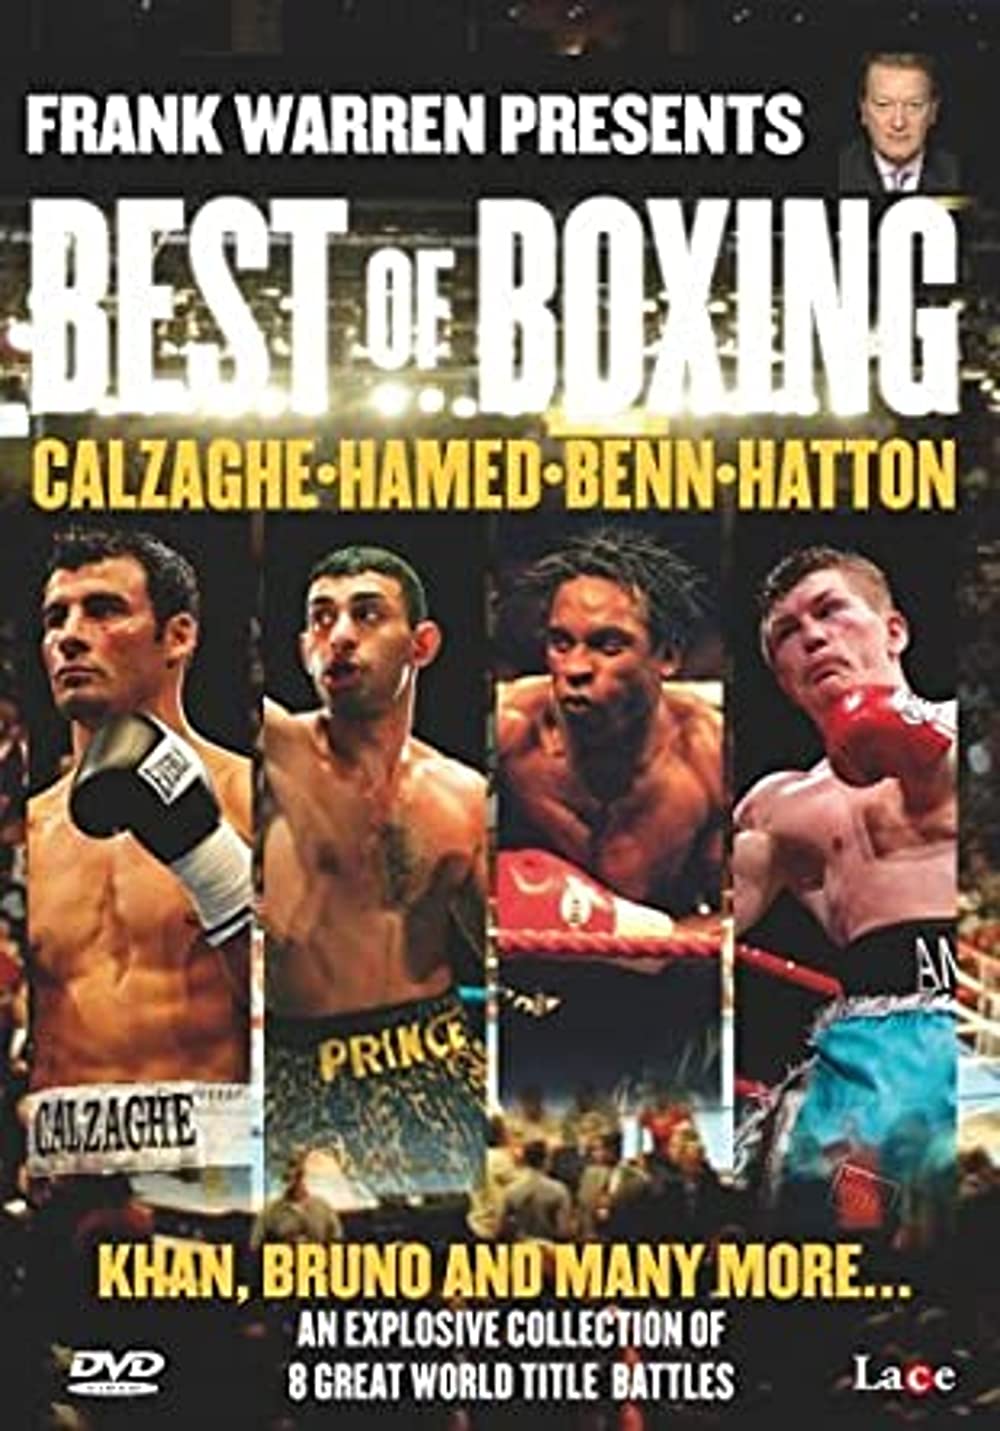 Frank Warren Presents: Best of Boxing